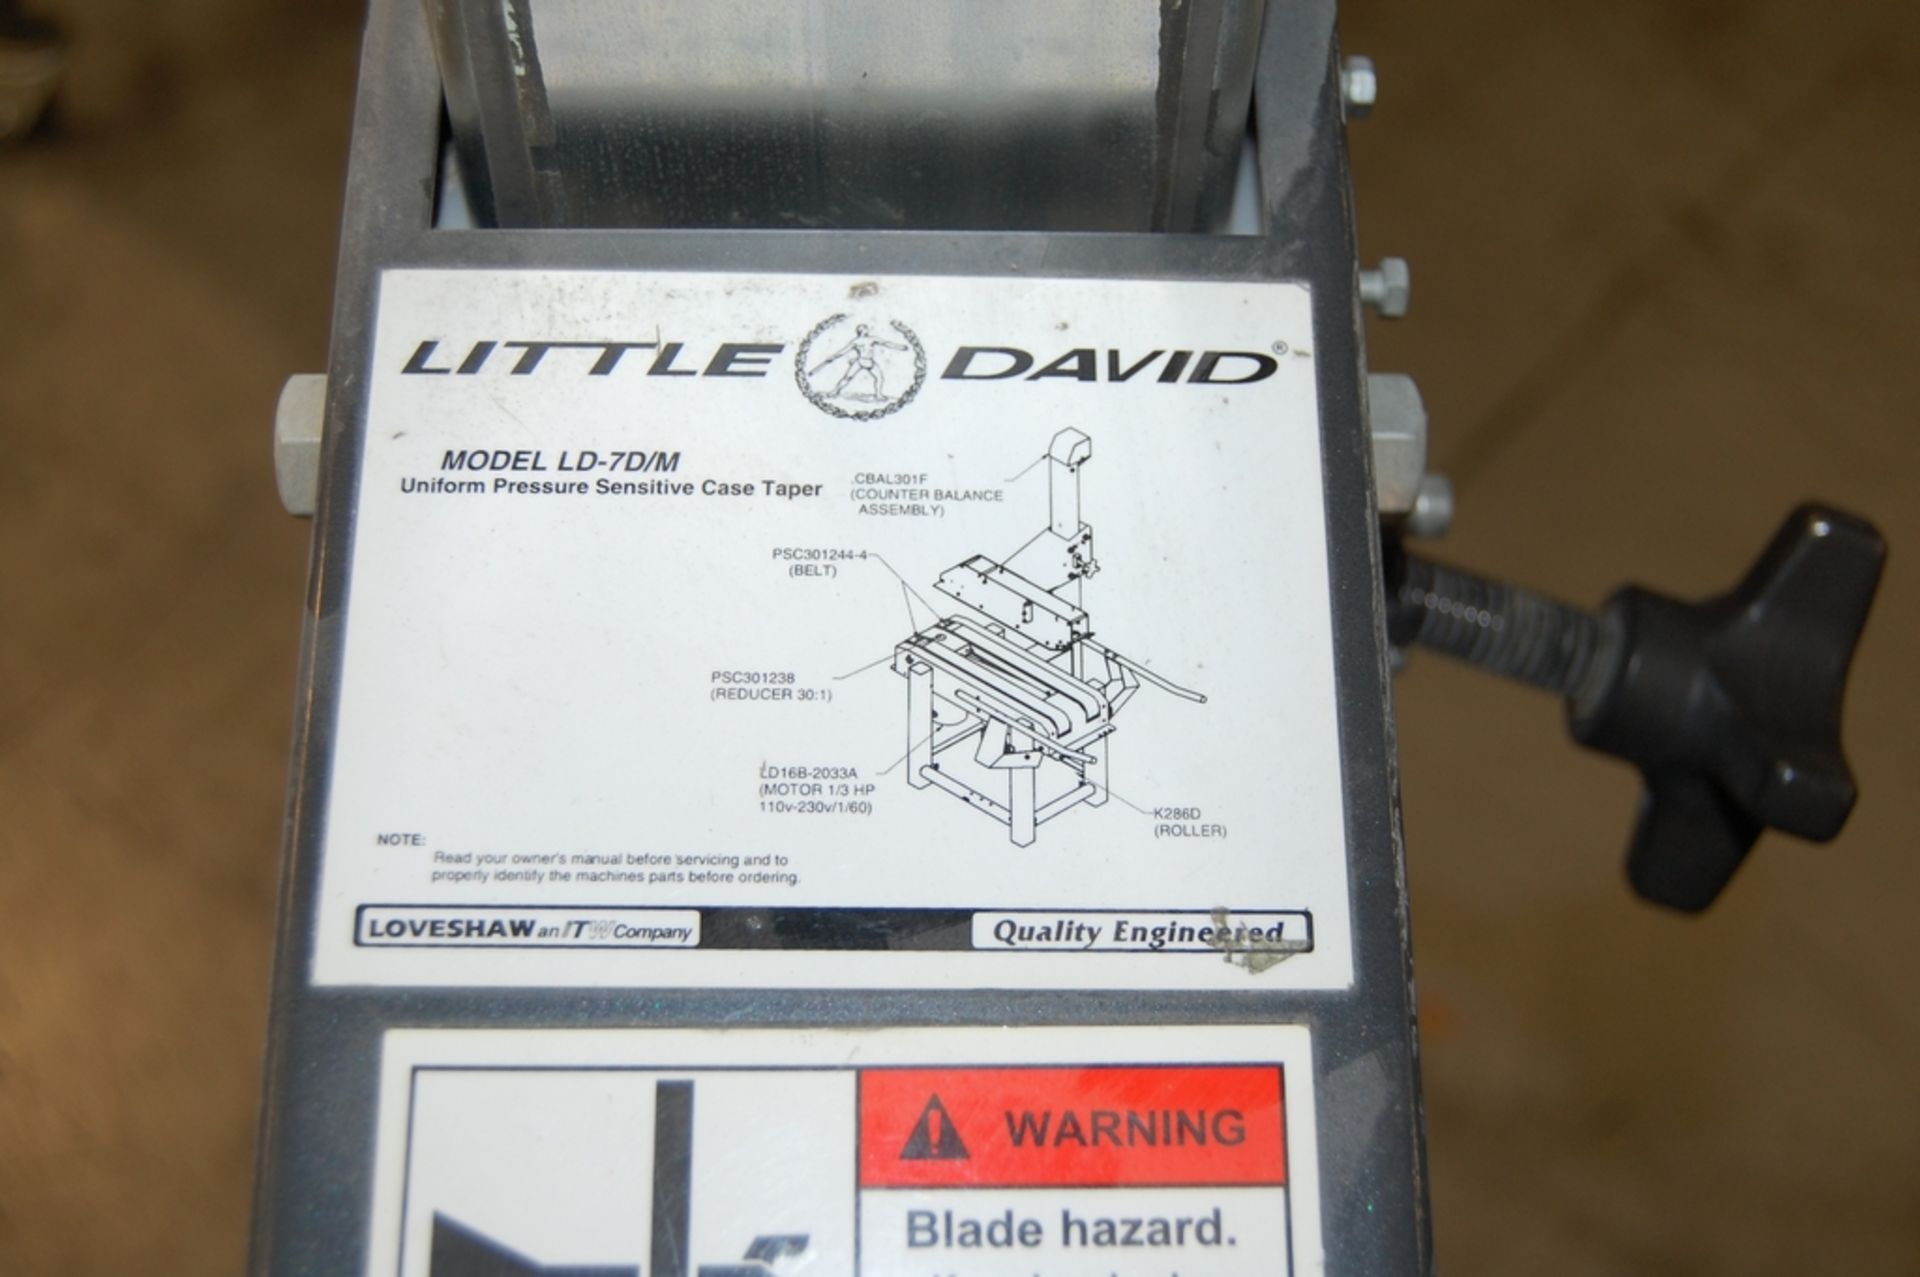 Loveshaw Model Little David LD-7D/M Uniform Pressure Sensitive Case Sealer - Image 5 of 5